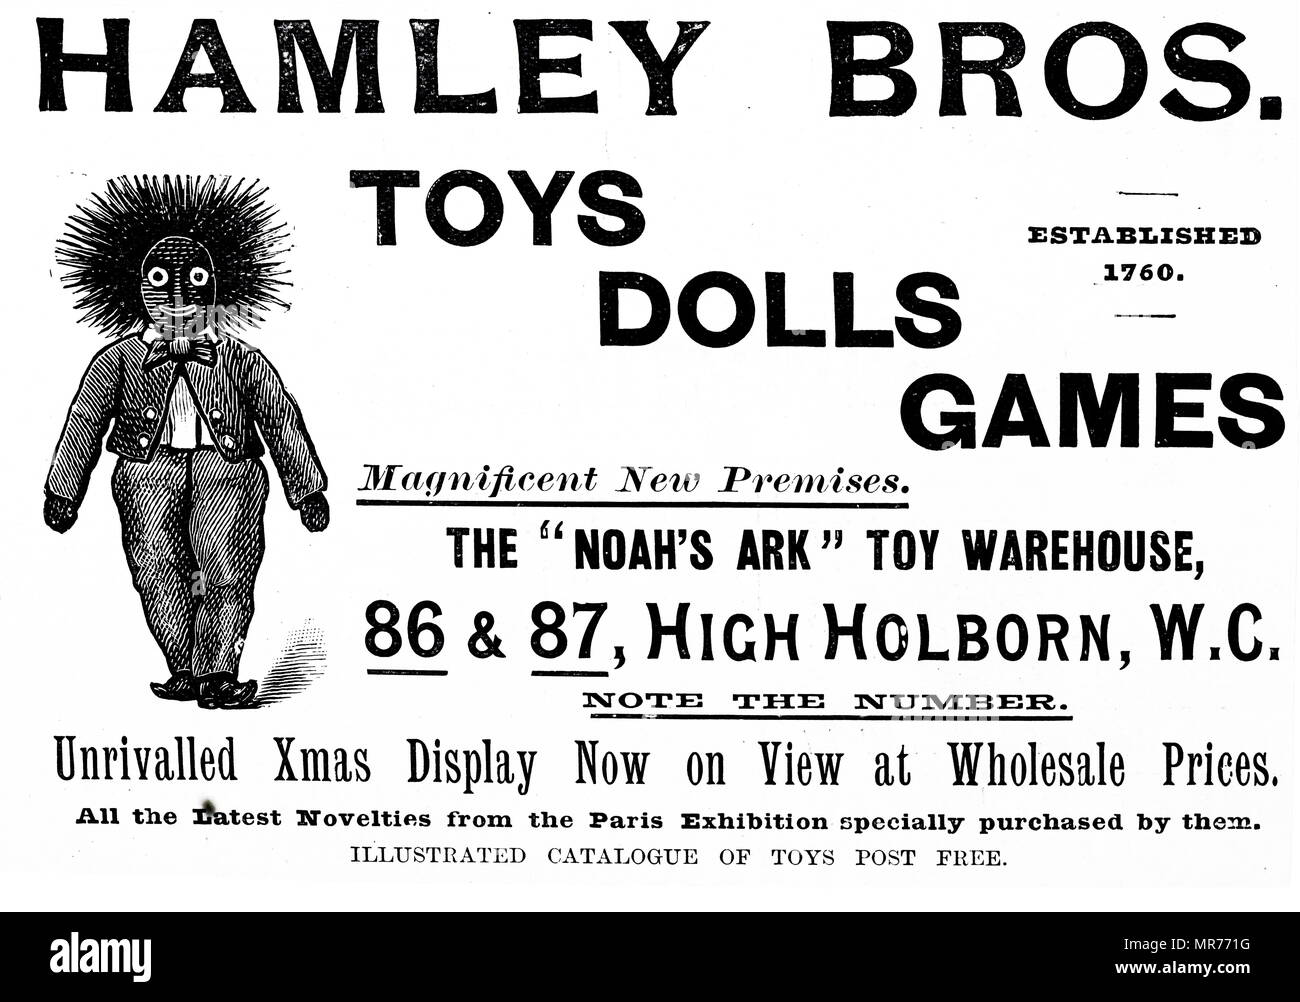 Pubblicità per Hamleys Toy Shop. Hamleys è il più antico e il più grande negozio di giocattoli nel mondo e uno dei migliori del mondo conosciuto dei dettaglianti di giocattoli. Fondata da William Hamley come 'l'Arca di Noè' in High Holborn, Londra, nel 1760, si è trasferita nella sua attuale sito su Regent Street nel 1881. Datata del XIX secolo Foto Stock